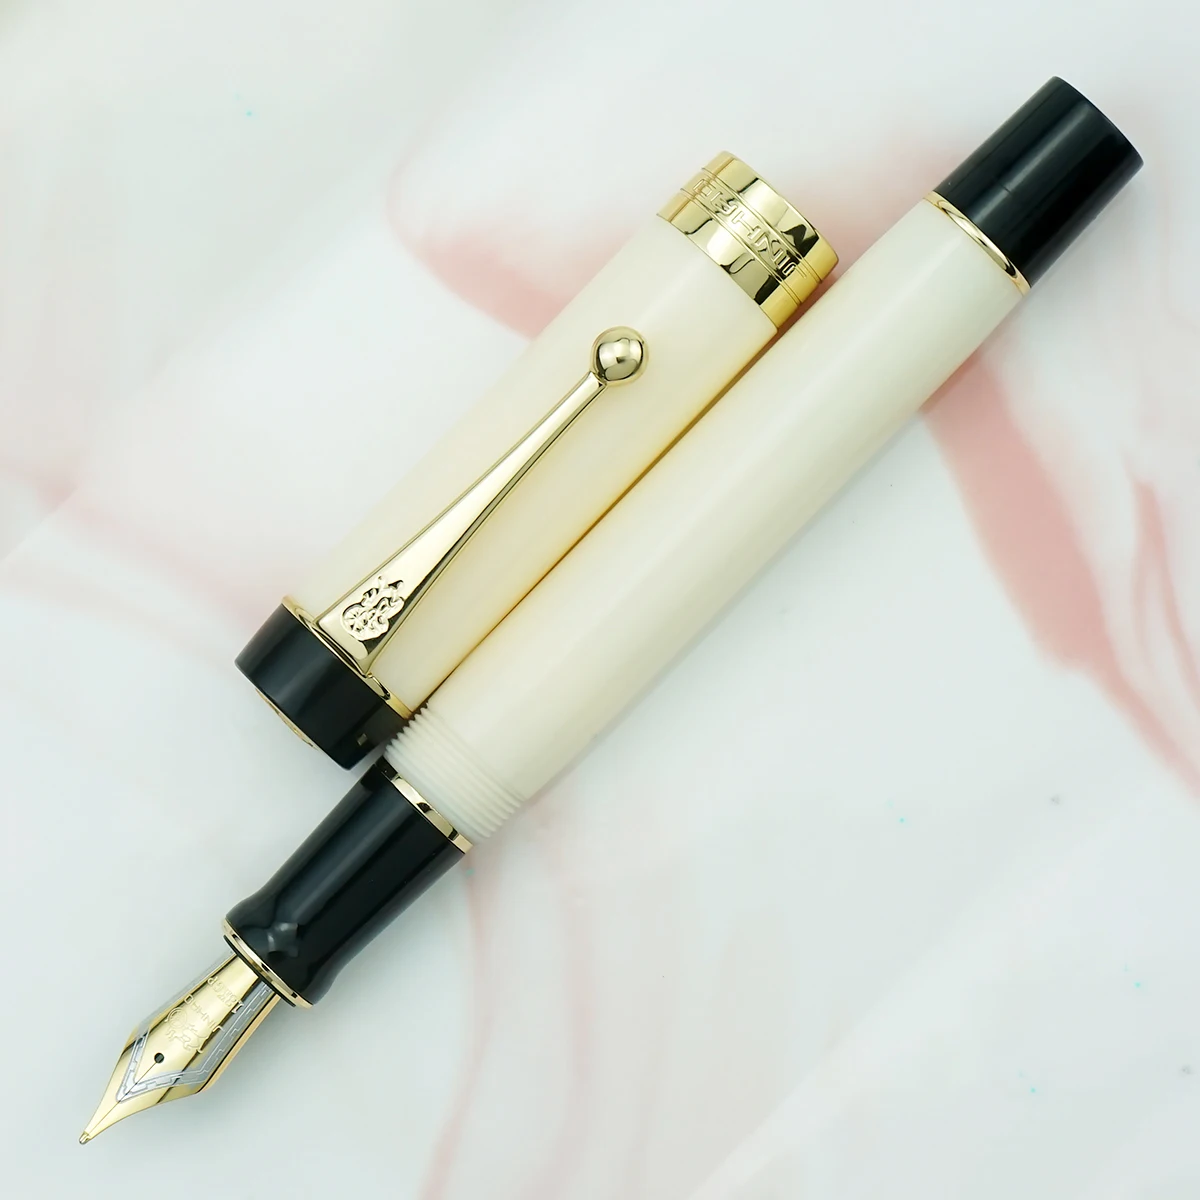 Iridium Bent Fude Point Gold Trim Converter Pen Writing Pen Jinhao 100 Centennial Resin Fountain Pen Blue Ice